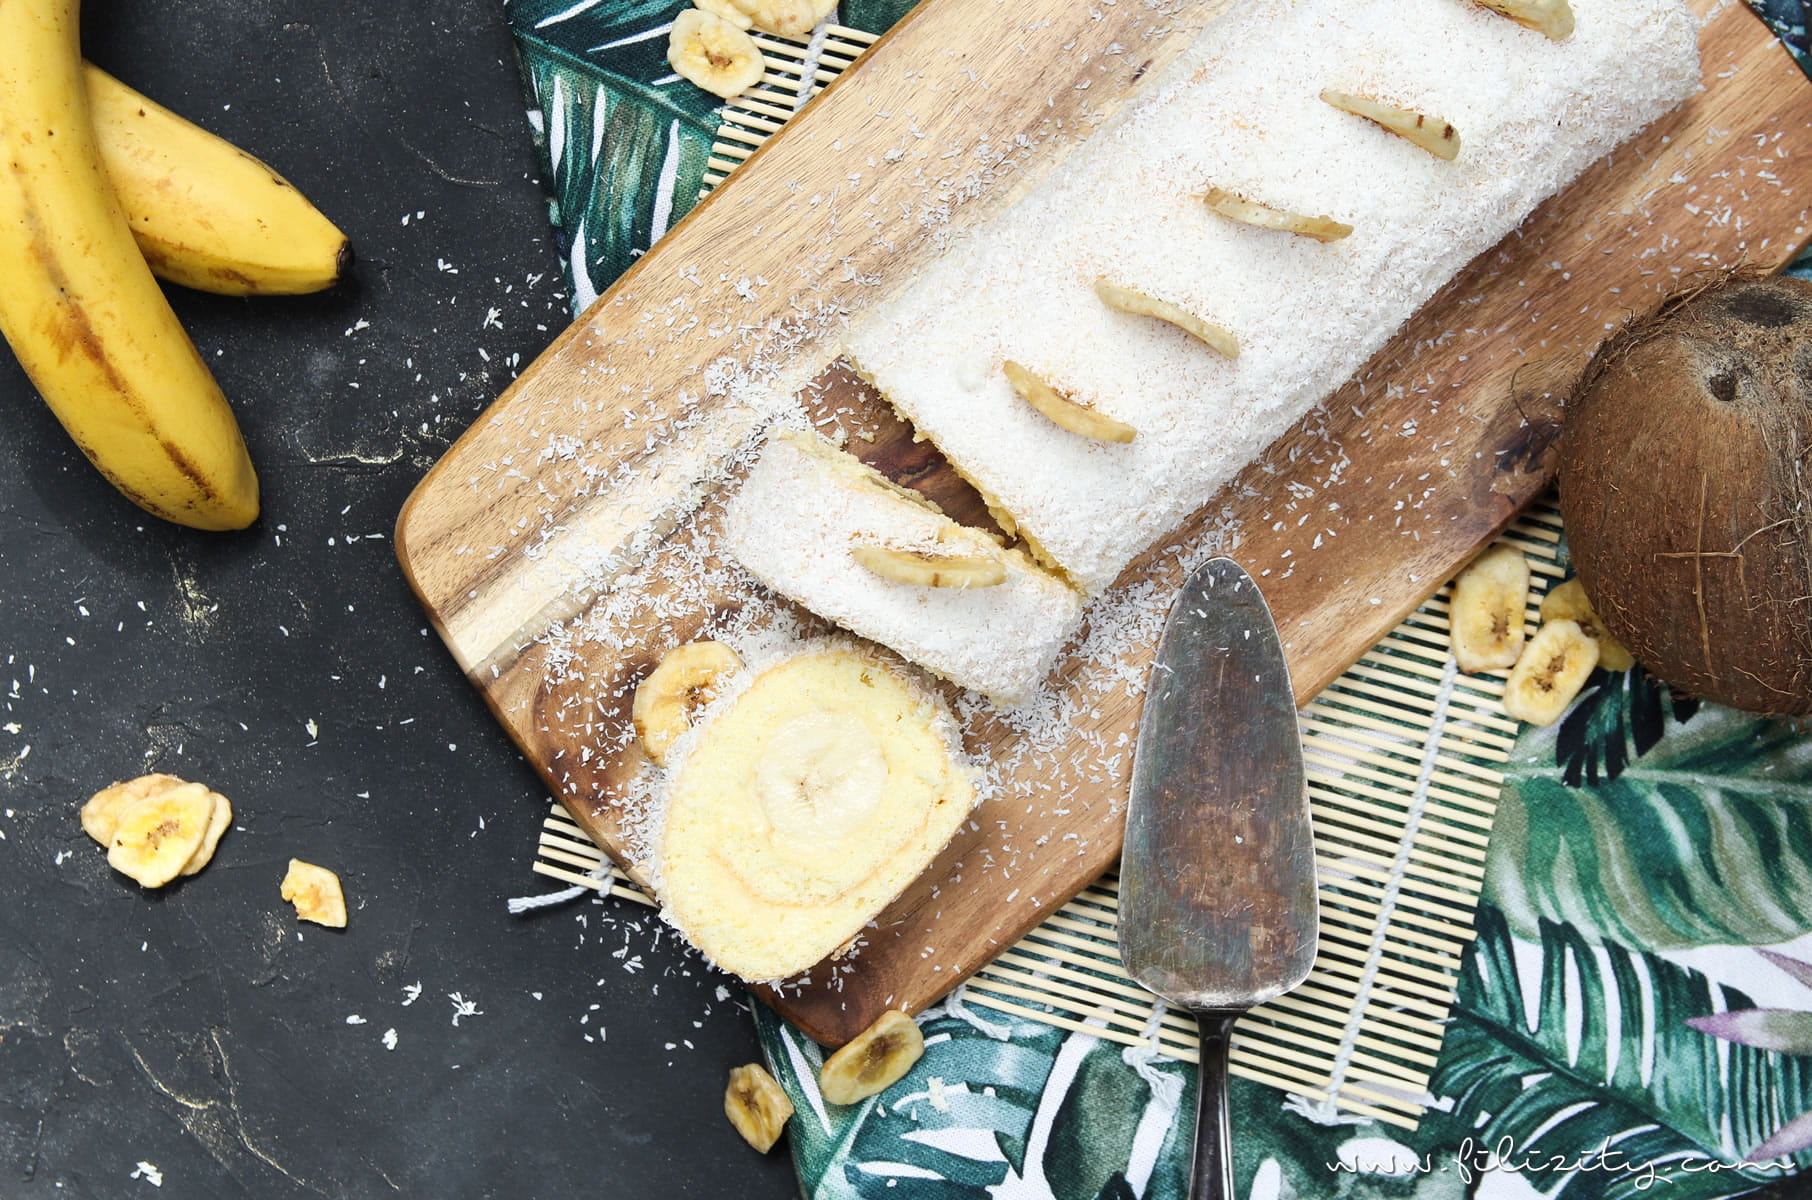 Einfaches Tortenrezept: Bananen-Kokos-Biskuitrolle mit Puddingcreme - Nicht nur im Sommer ein Hit! | Filizity.com | Food-Blog aus dem Rheinland #torte #kuchen #biskuit #bananaaaa